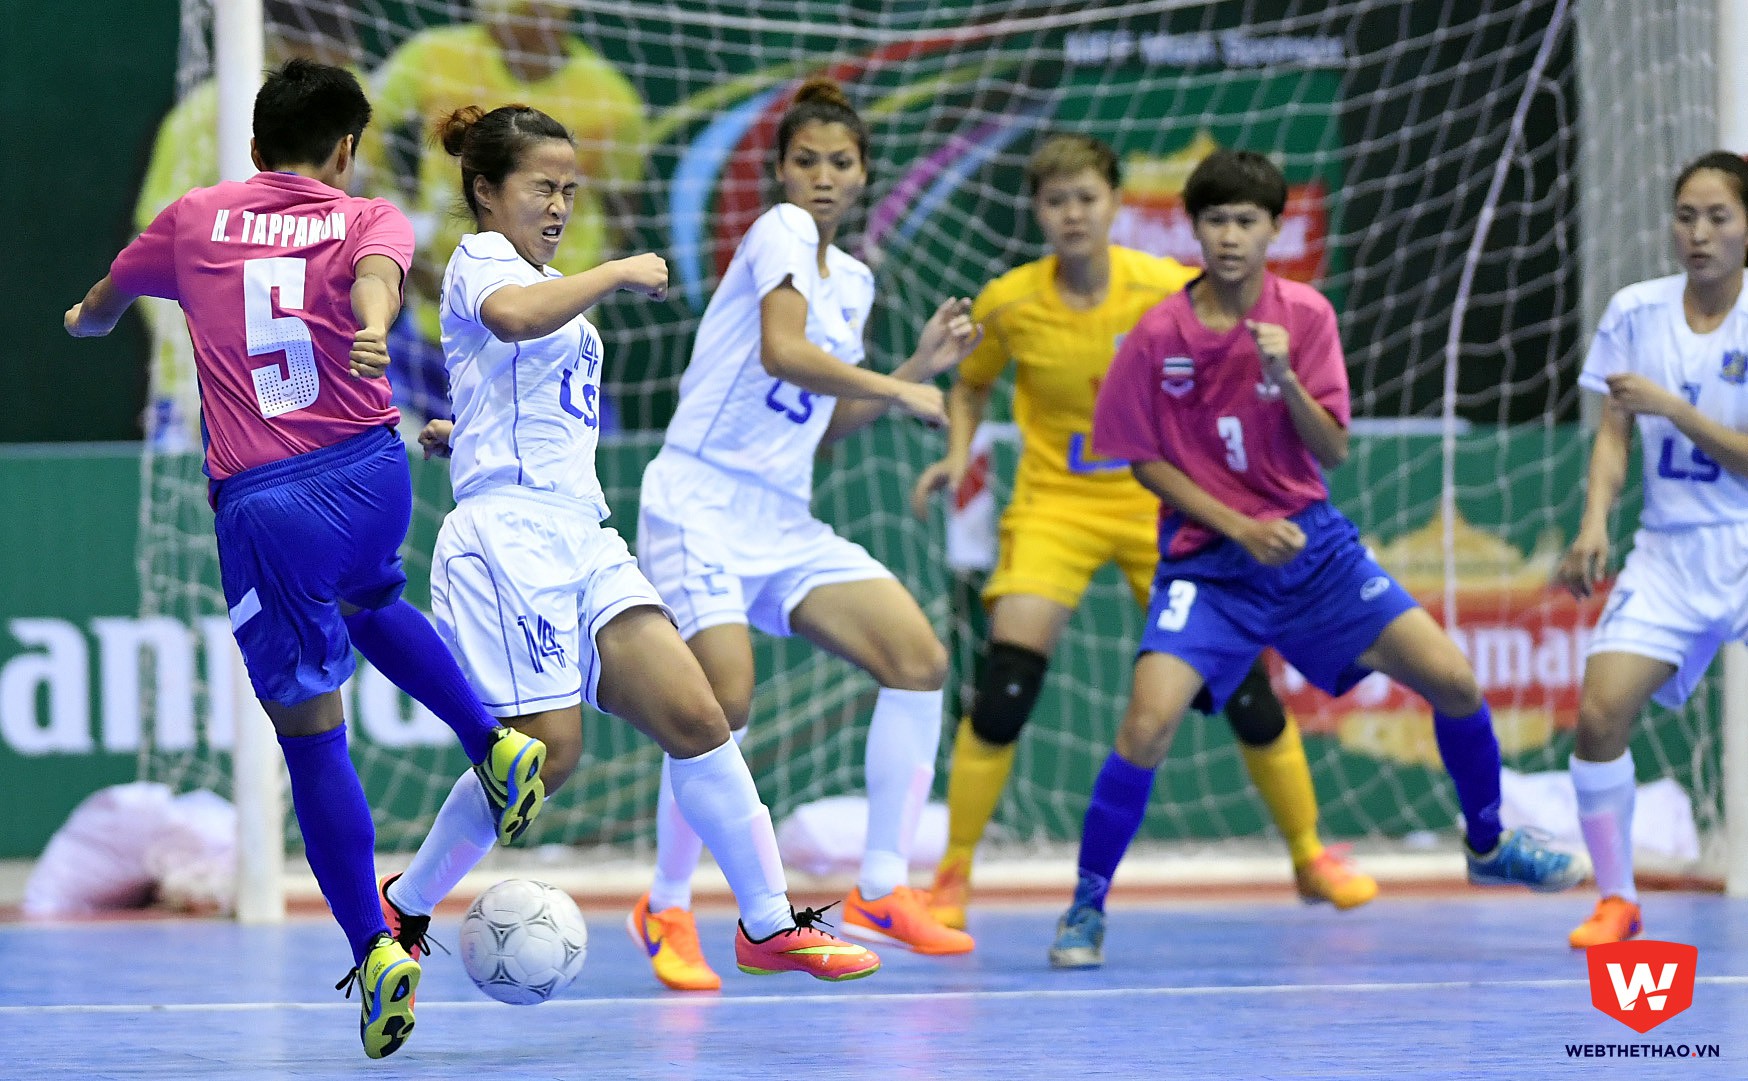 Cuối cùng những nữ cầu thủ của chúng cũng bị khuất phục bởi bàn thắng gỡ hòa của các cầu thủ đội Bangkok 